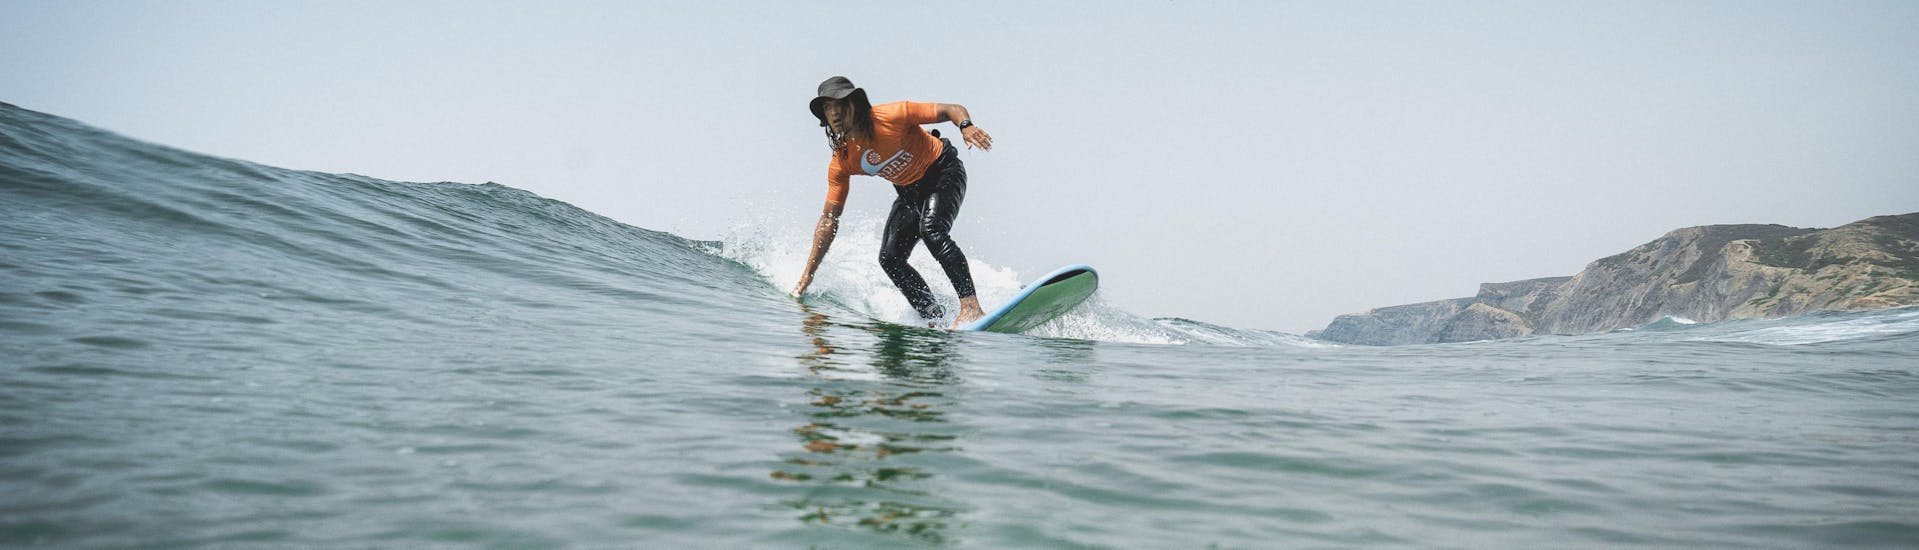 Een deelnemer rijdt op een kleine golf tijdens privé surflessen (vanaf 6 jaar) op Praia Castelejo met Good Feeling Surf School Algarve.